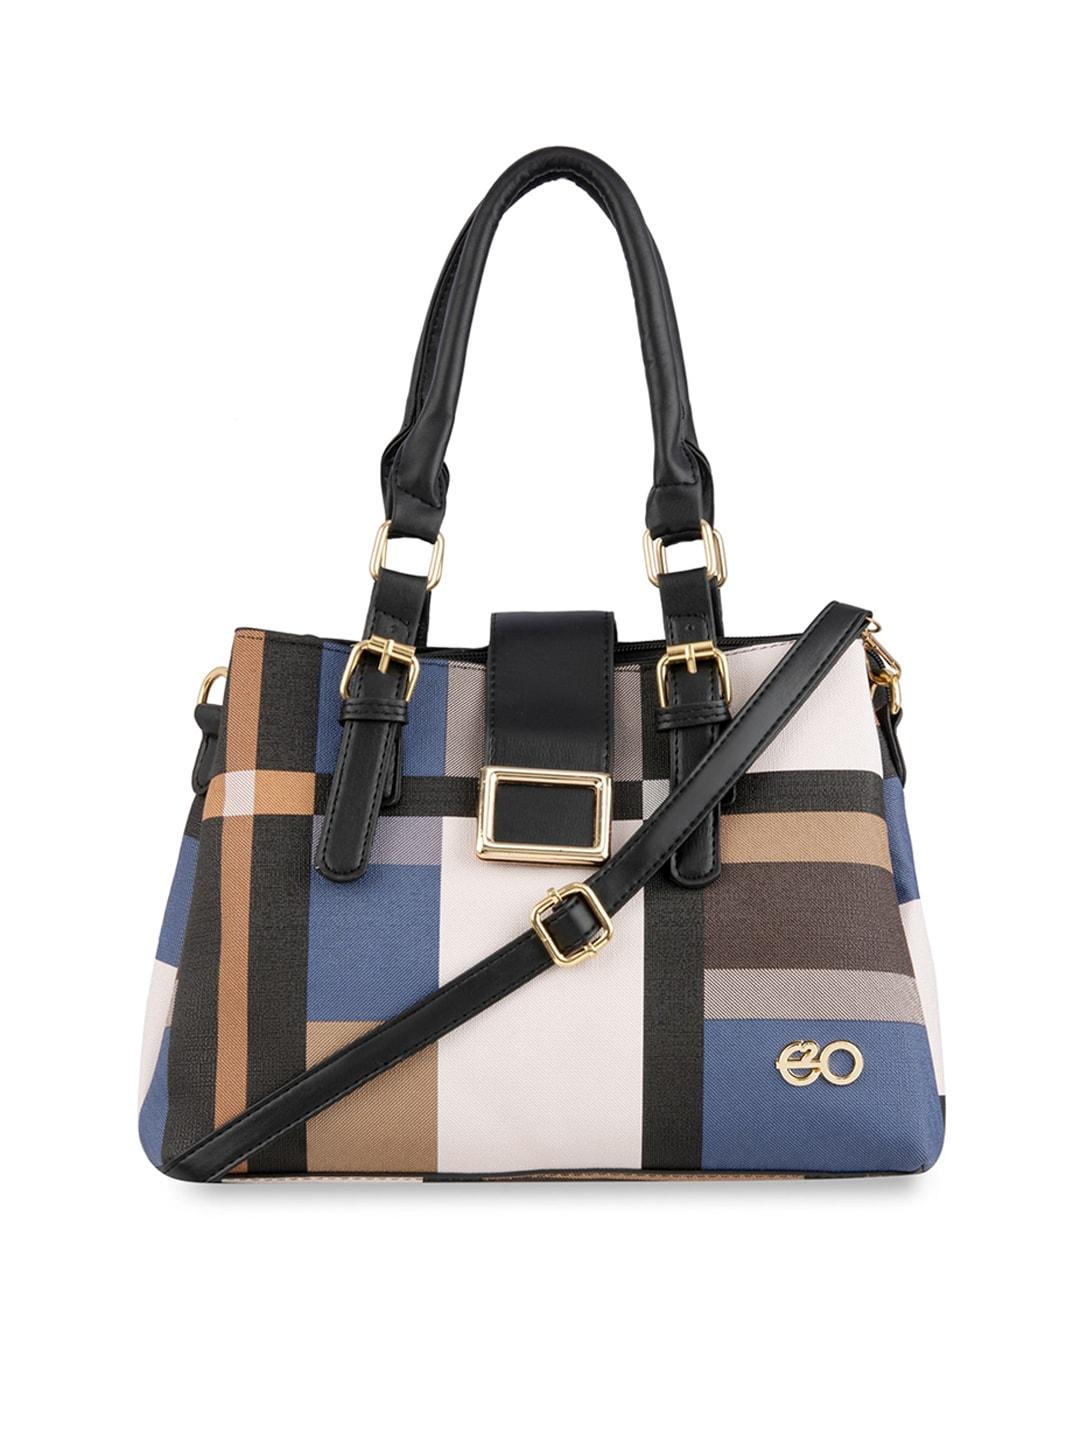 E2O Blue Colourblocked PU Shopper Handheld Bag with Applique